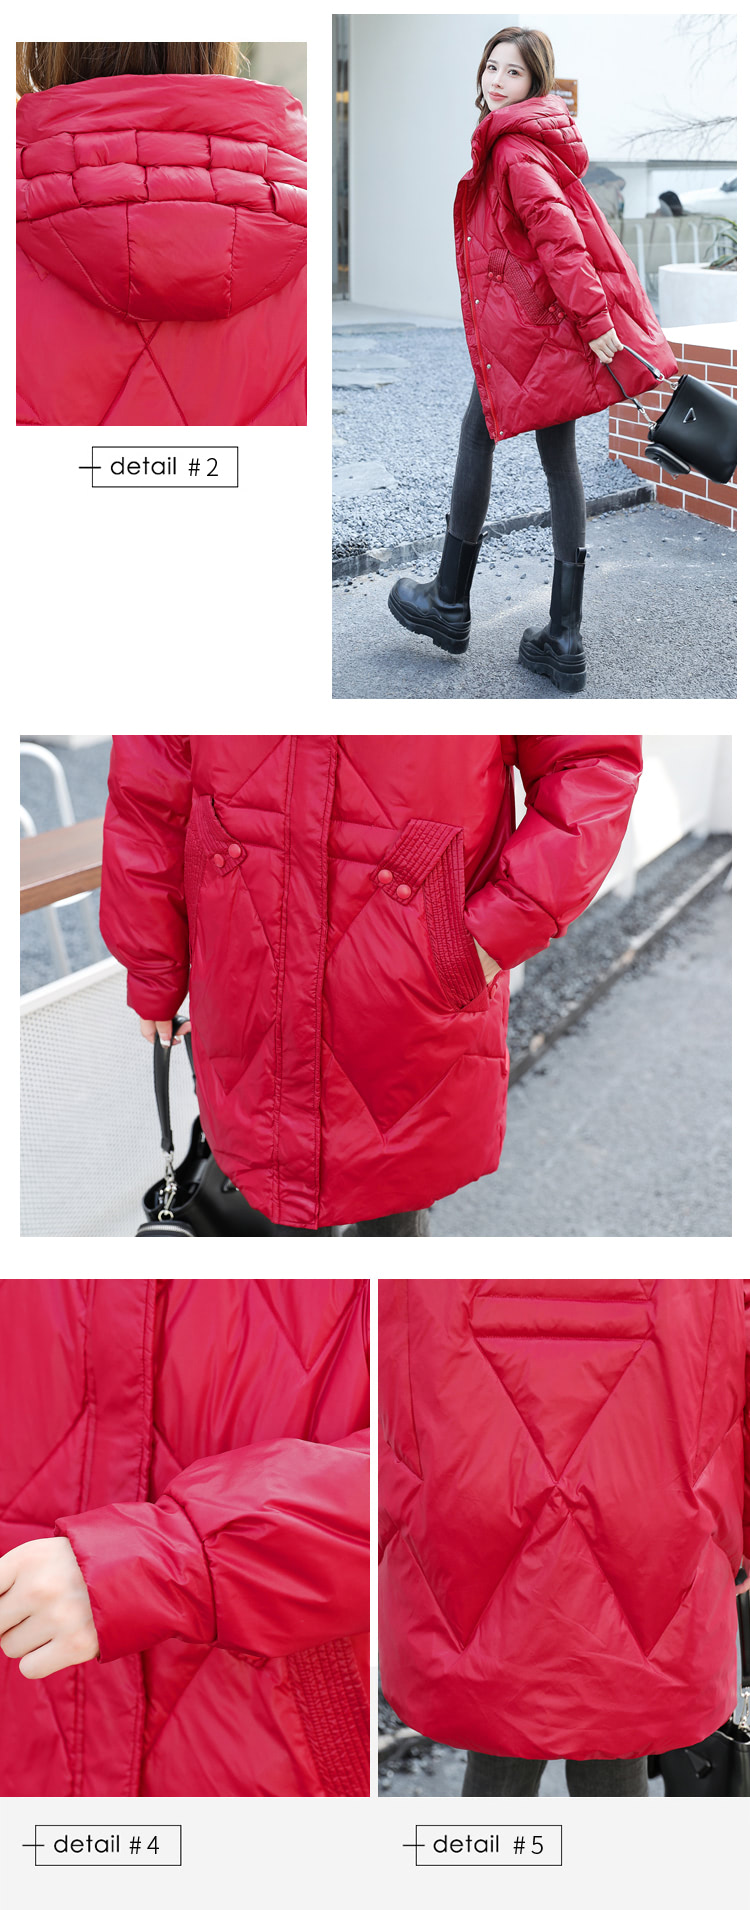 Female-Hooded-Mid-Length-Down-Jacket-Warm-Puffer-Parka-Outwear13.jpg